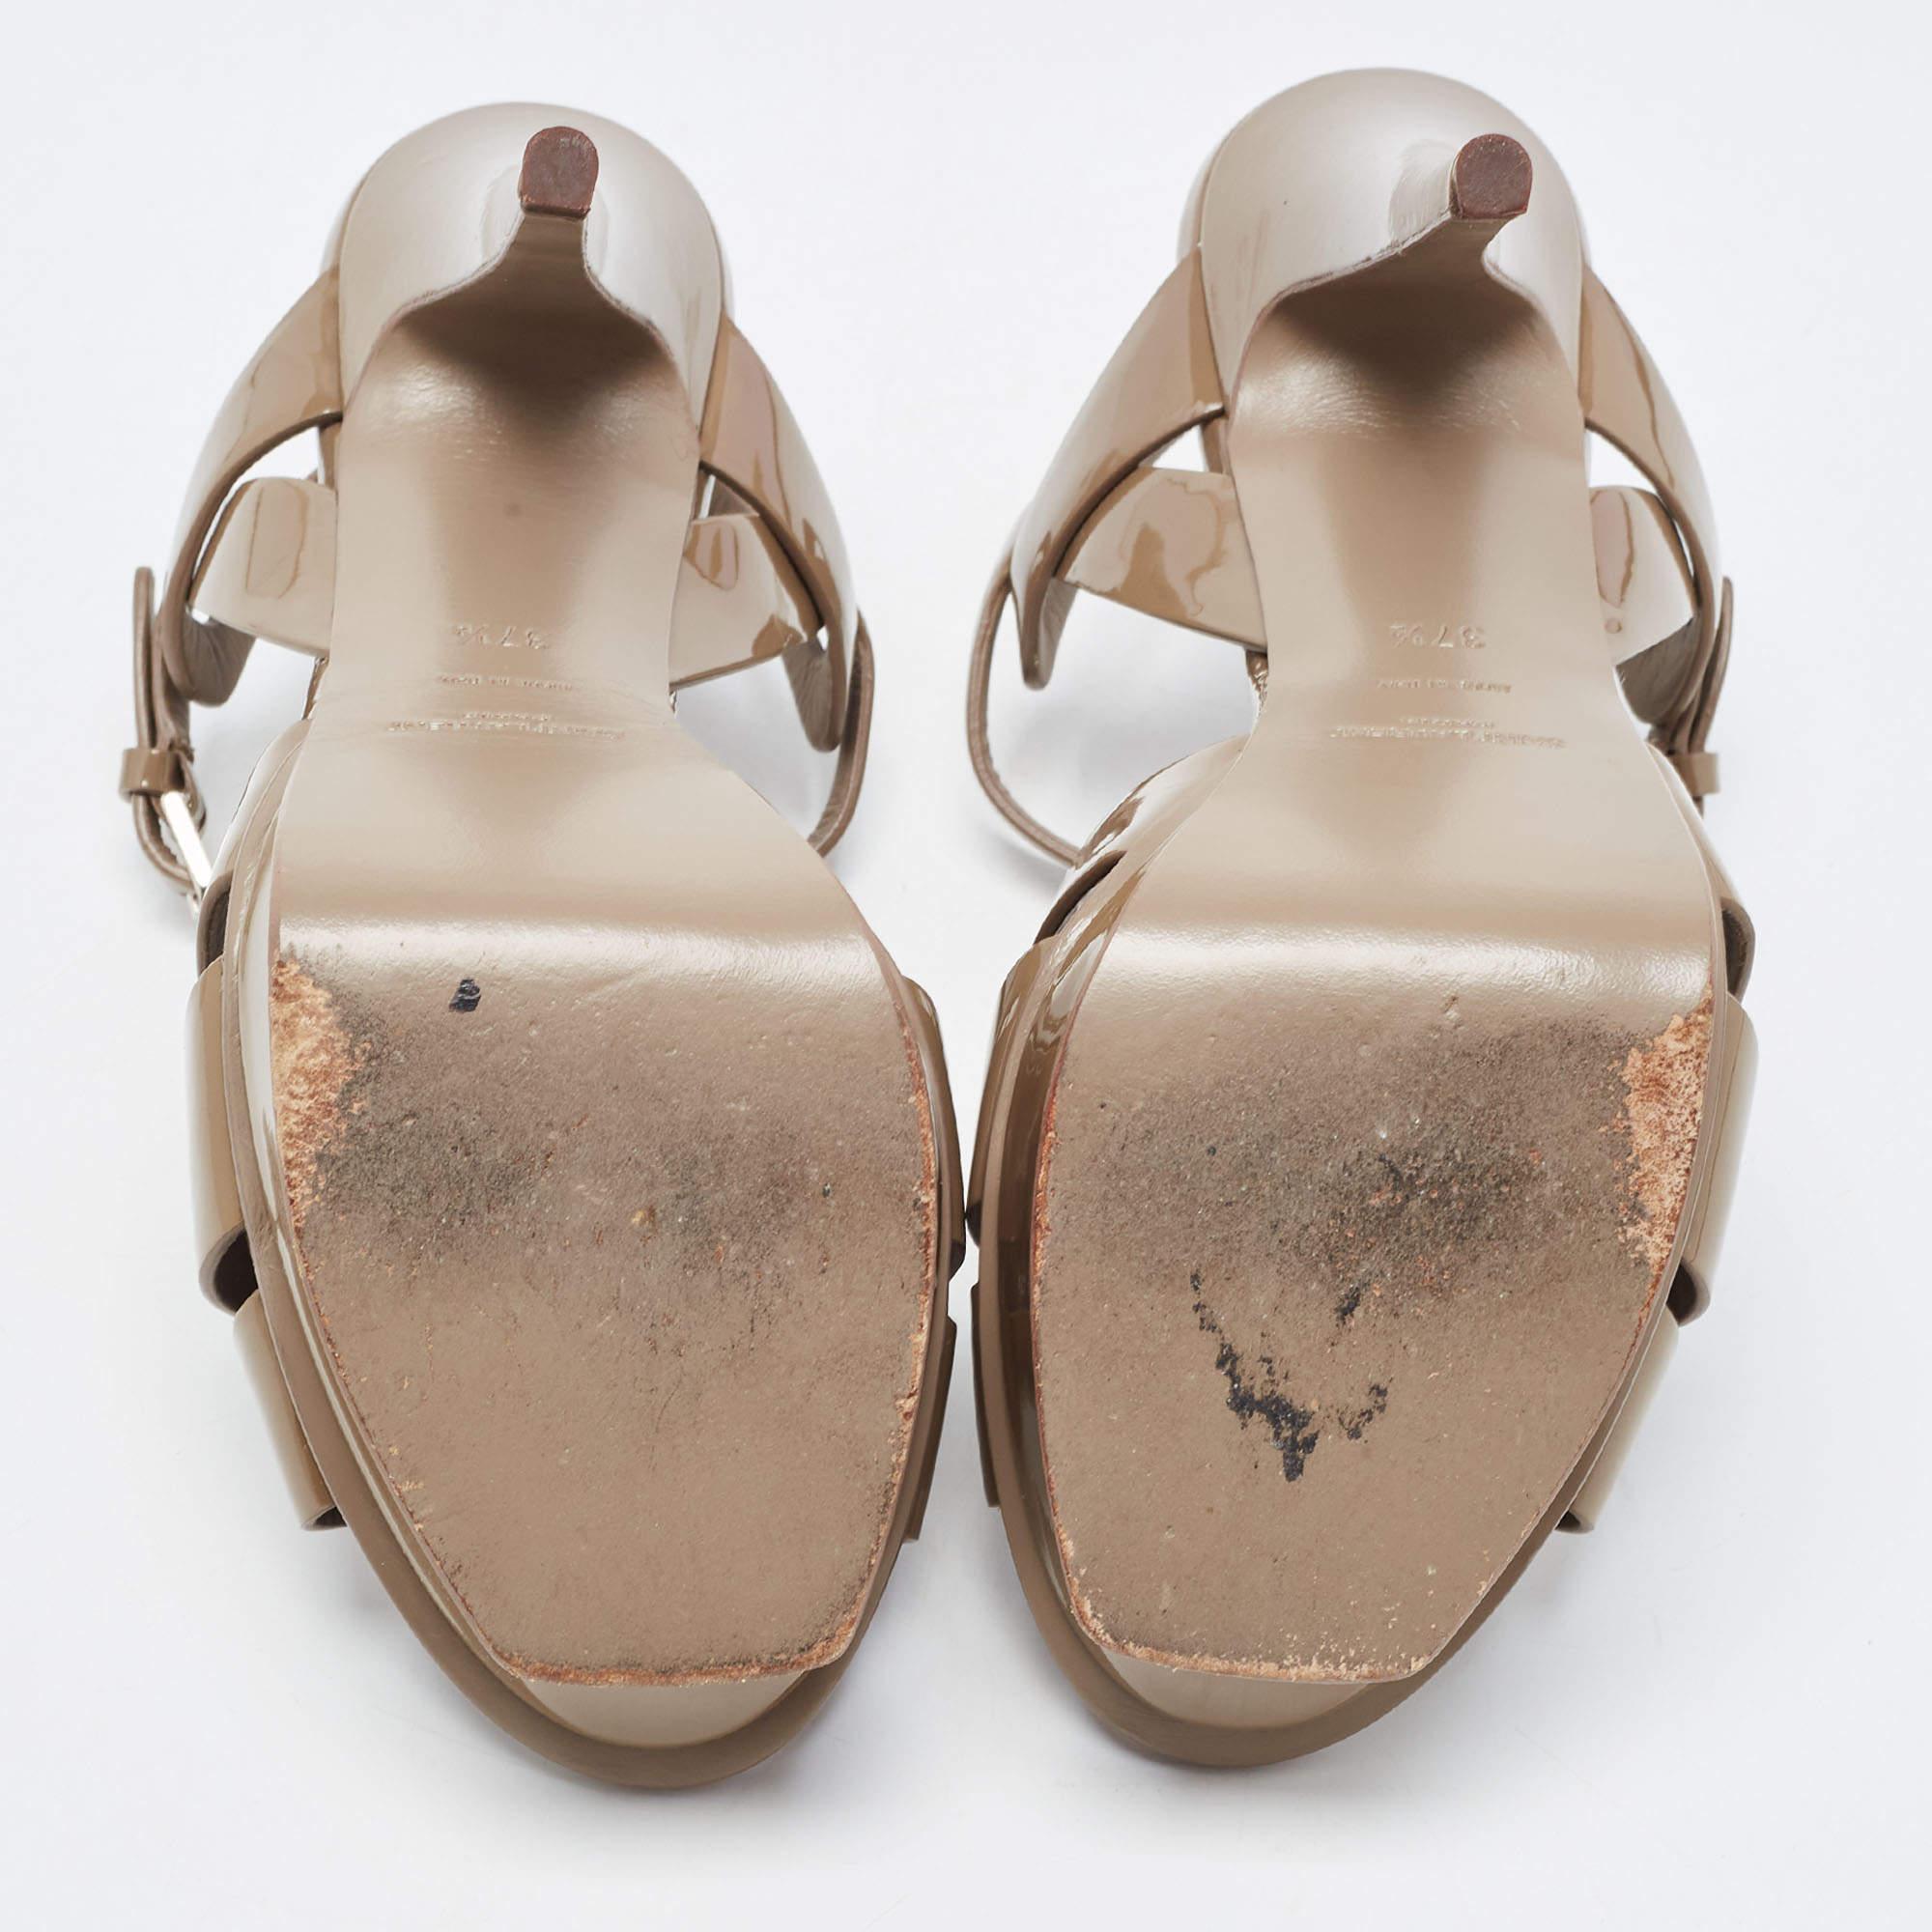 Saint Laurent Brown Patent Leather Tribute Sandals Size 37.5 4